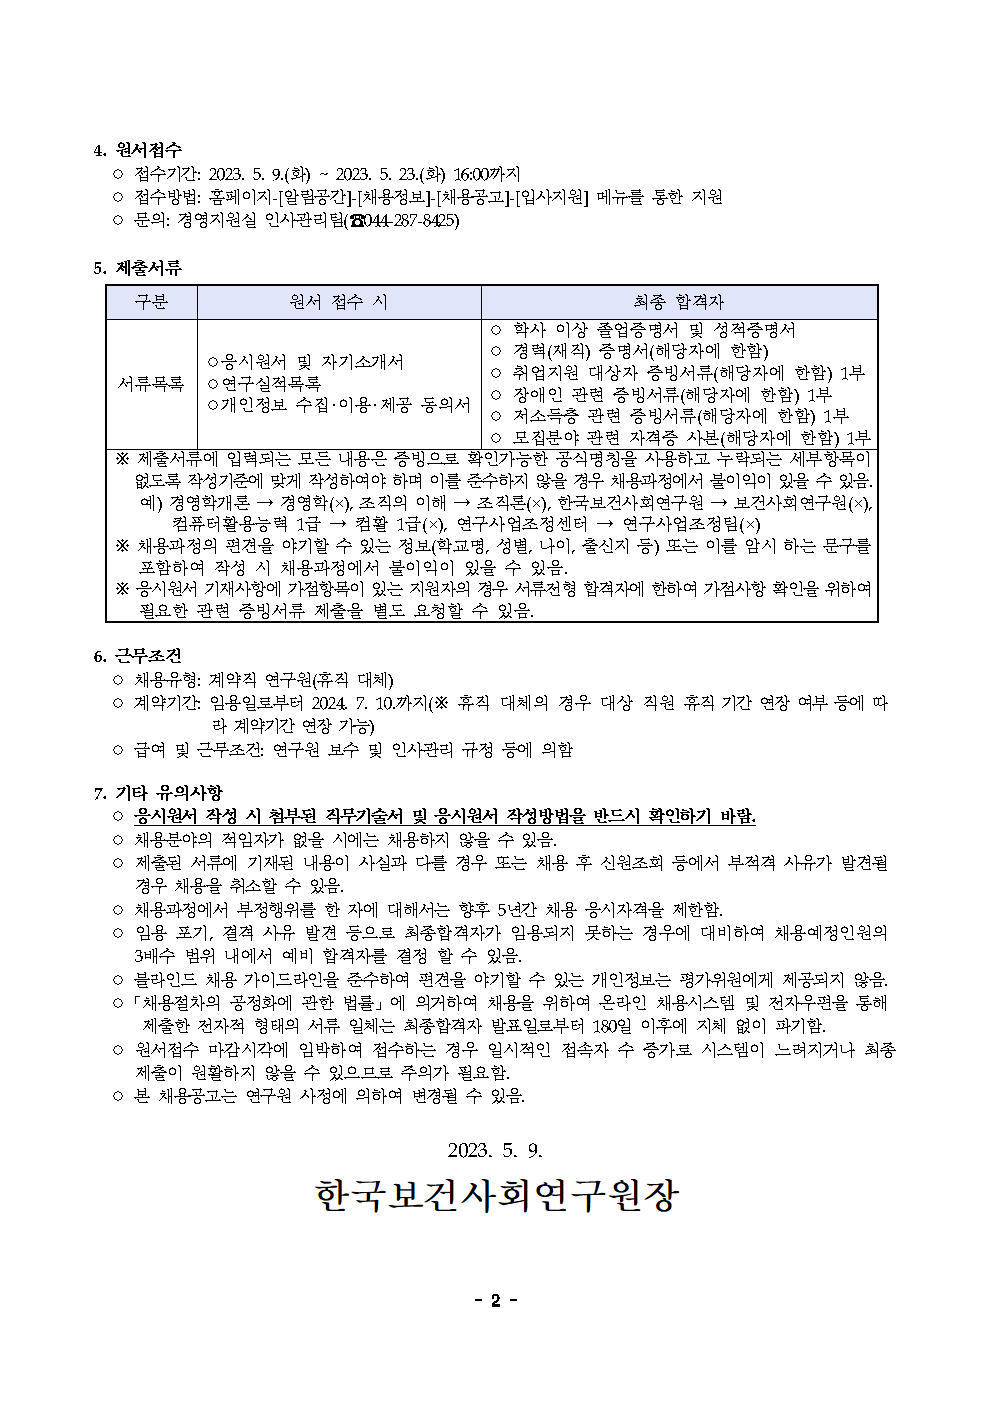 (2/2) 한국보건사회연구원 계약직 연구원 채용 공고(빈곤불평등연구실) - 자세한 내용은 하단 참조